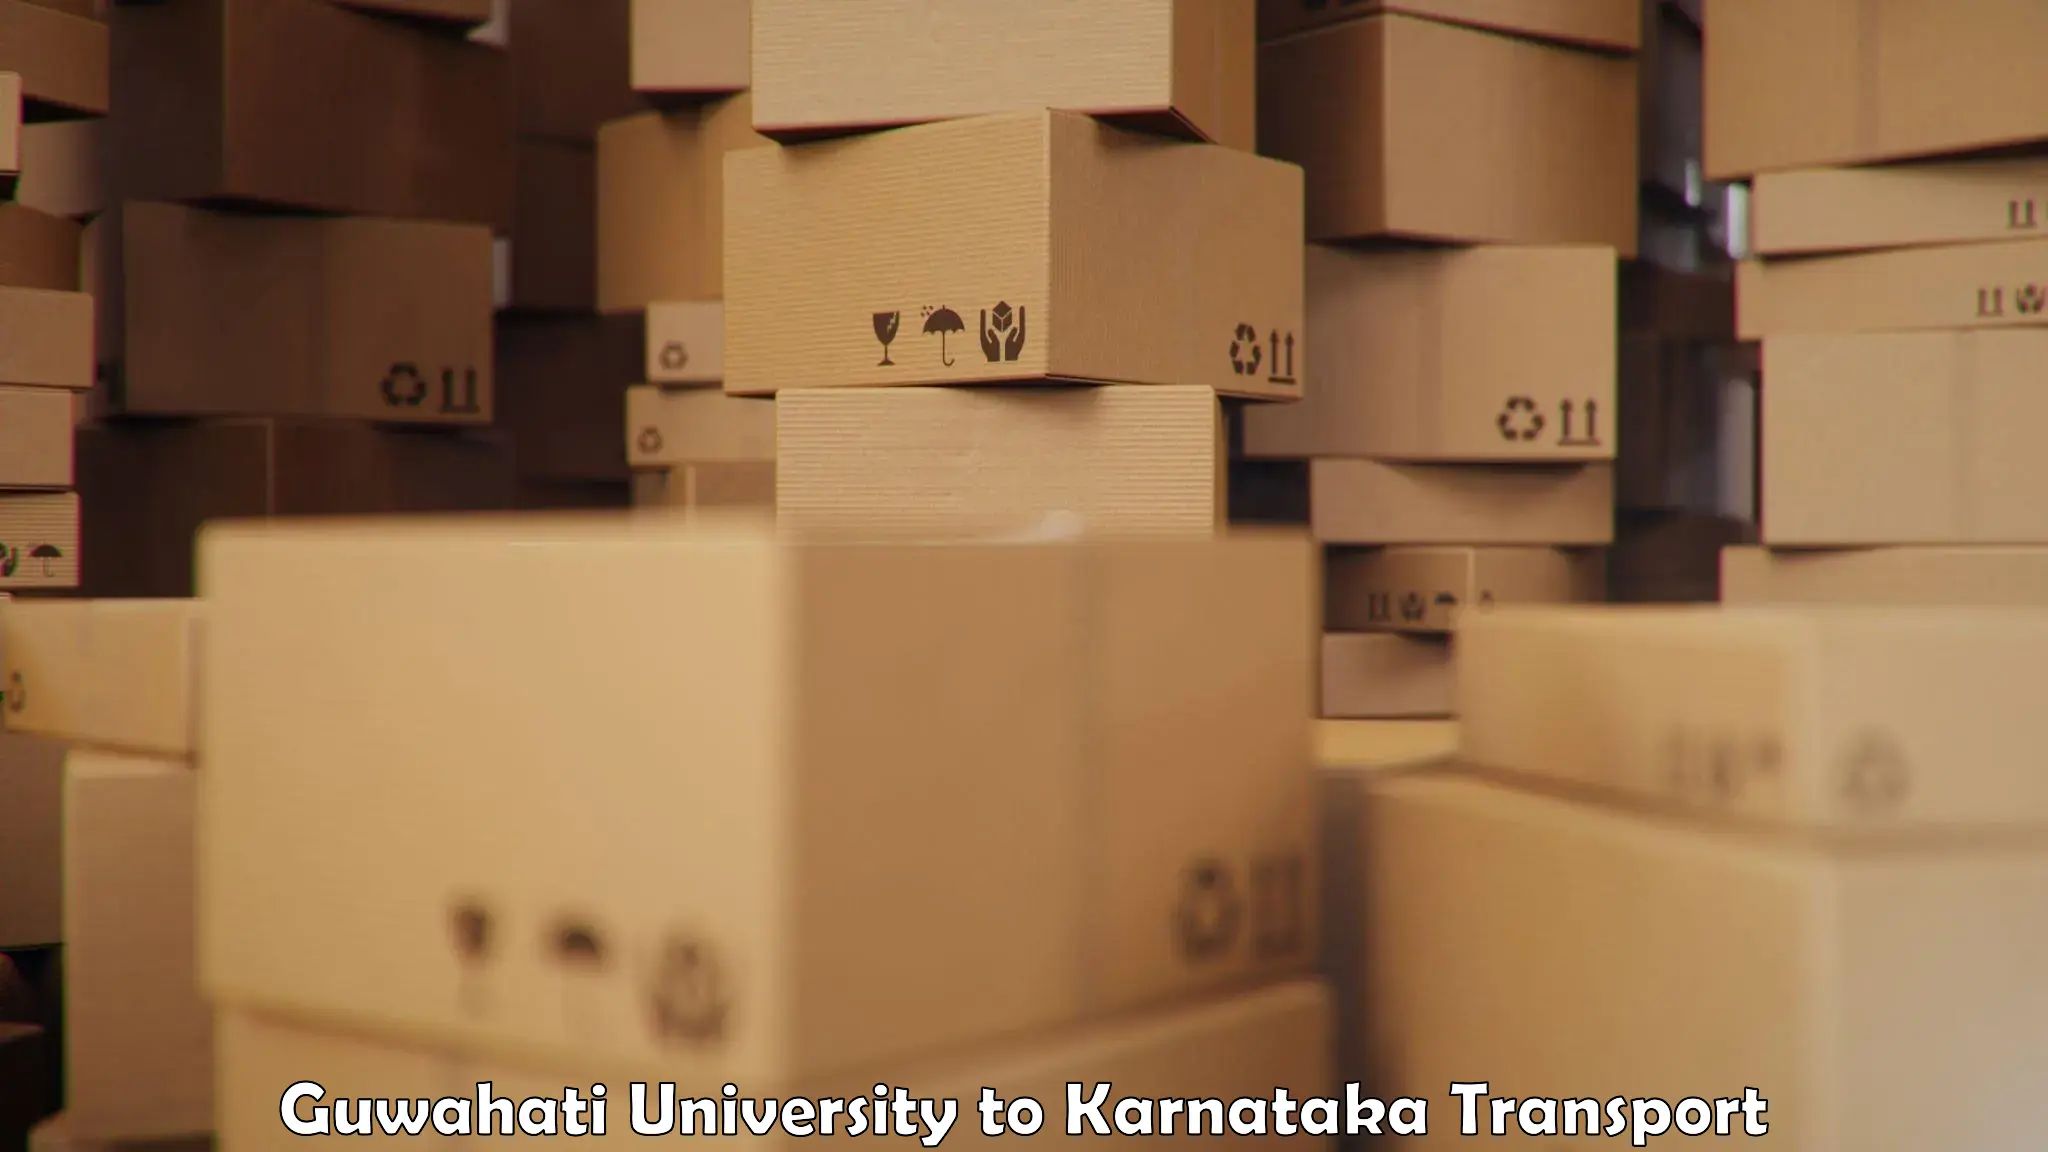 Lorry transport service Guwahati University to Channarayapatna